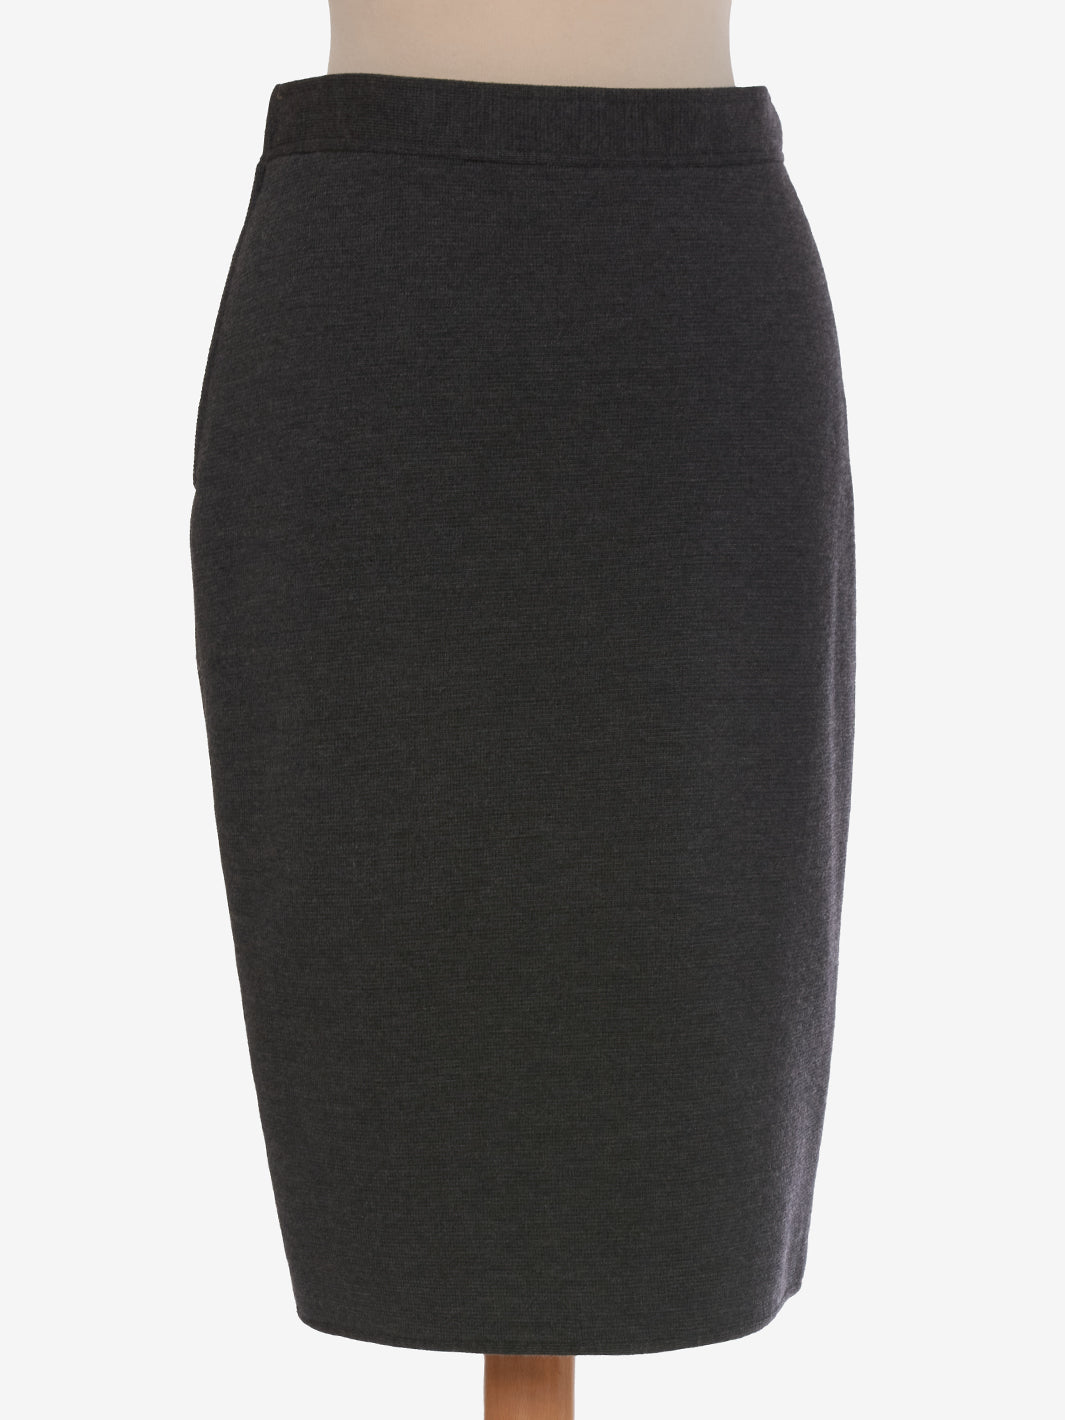 Gianni Versace Gray Wool Skirt